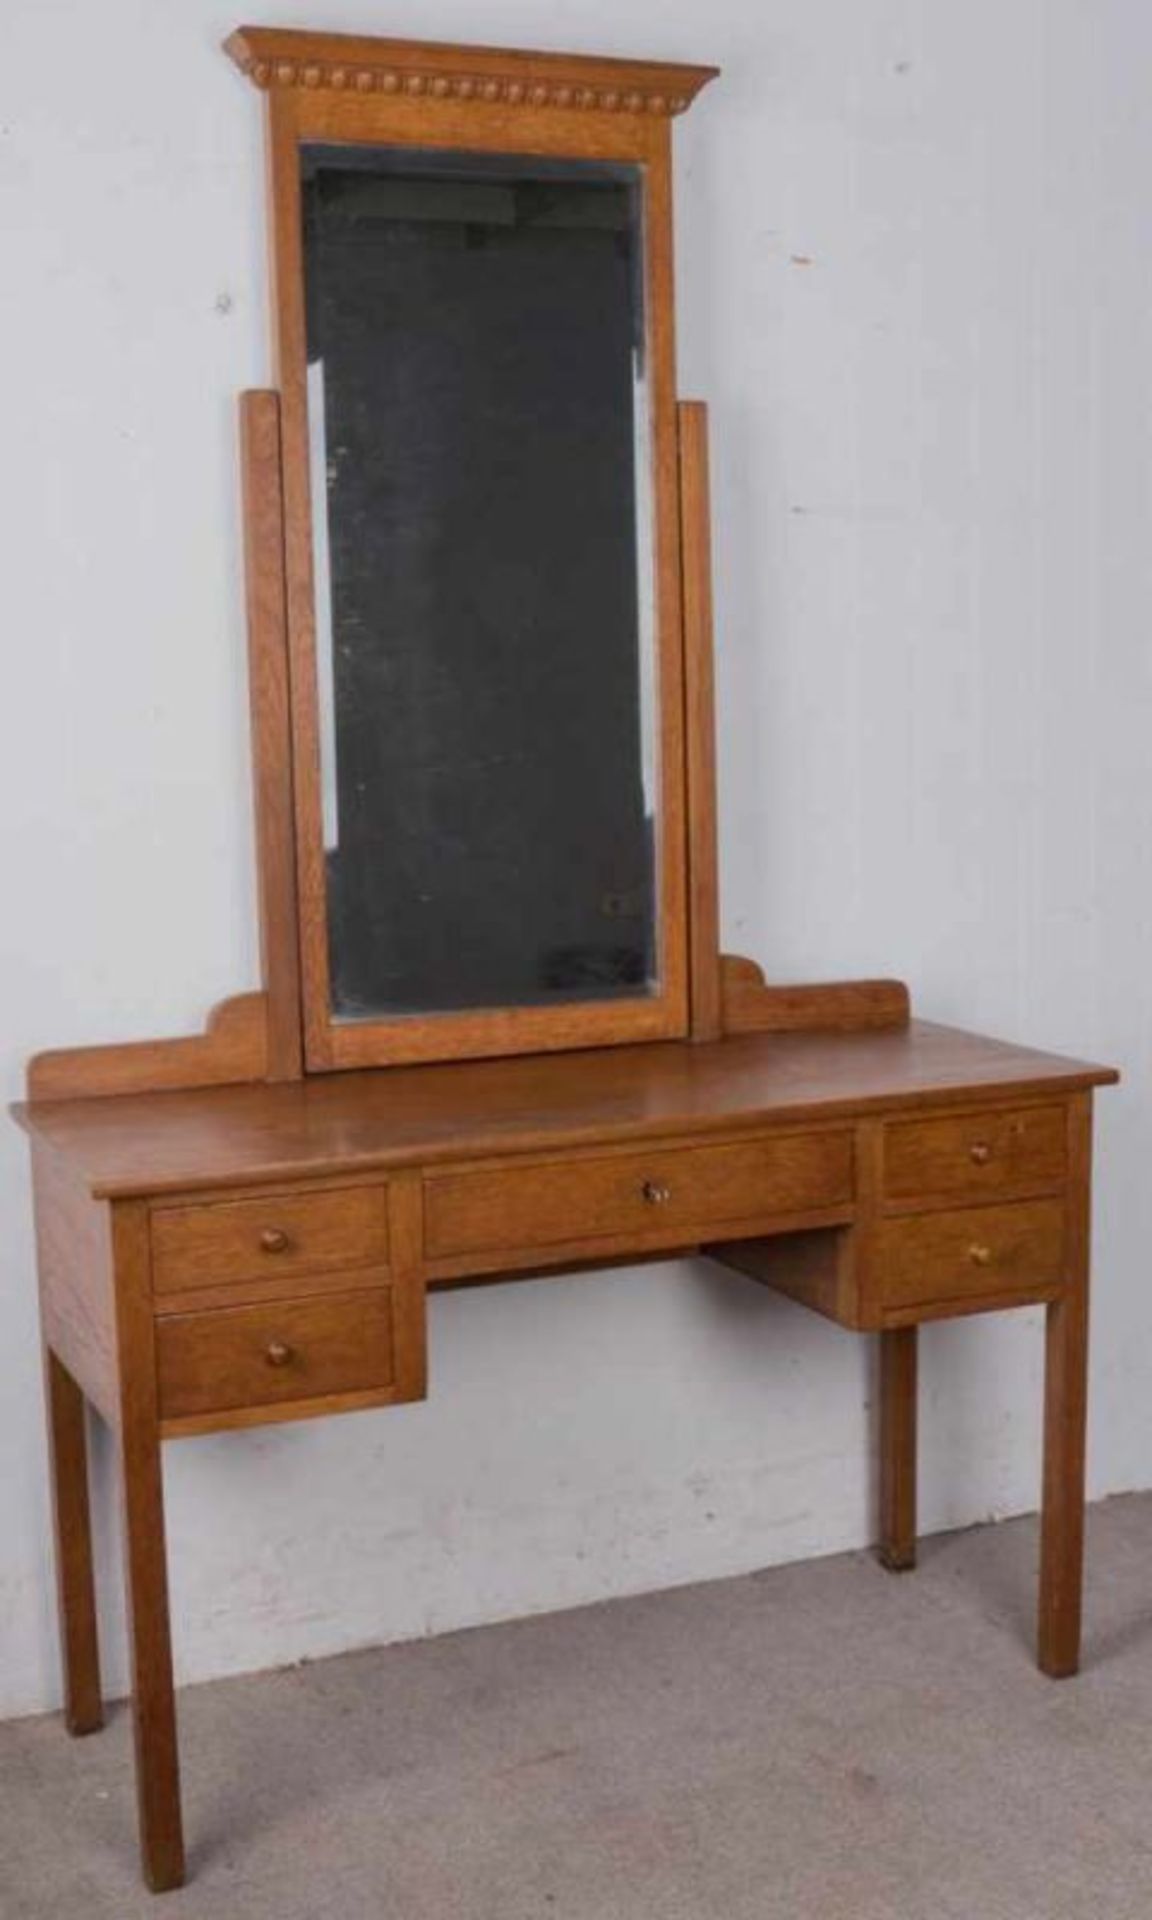 Frisiertisch. Eiche. 1920er/30er Jahre. Tisch mit hohen schlanken Beinen, darauf montierter Spiegel. - Image 3 of 5